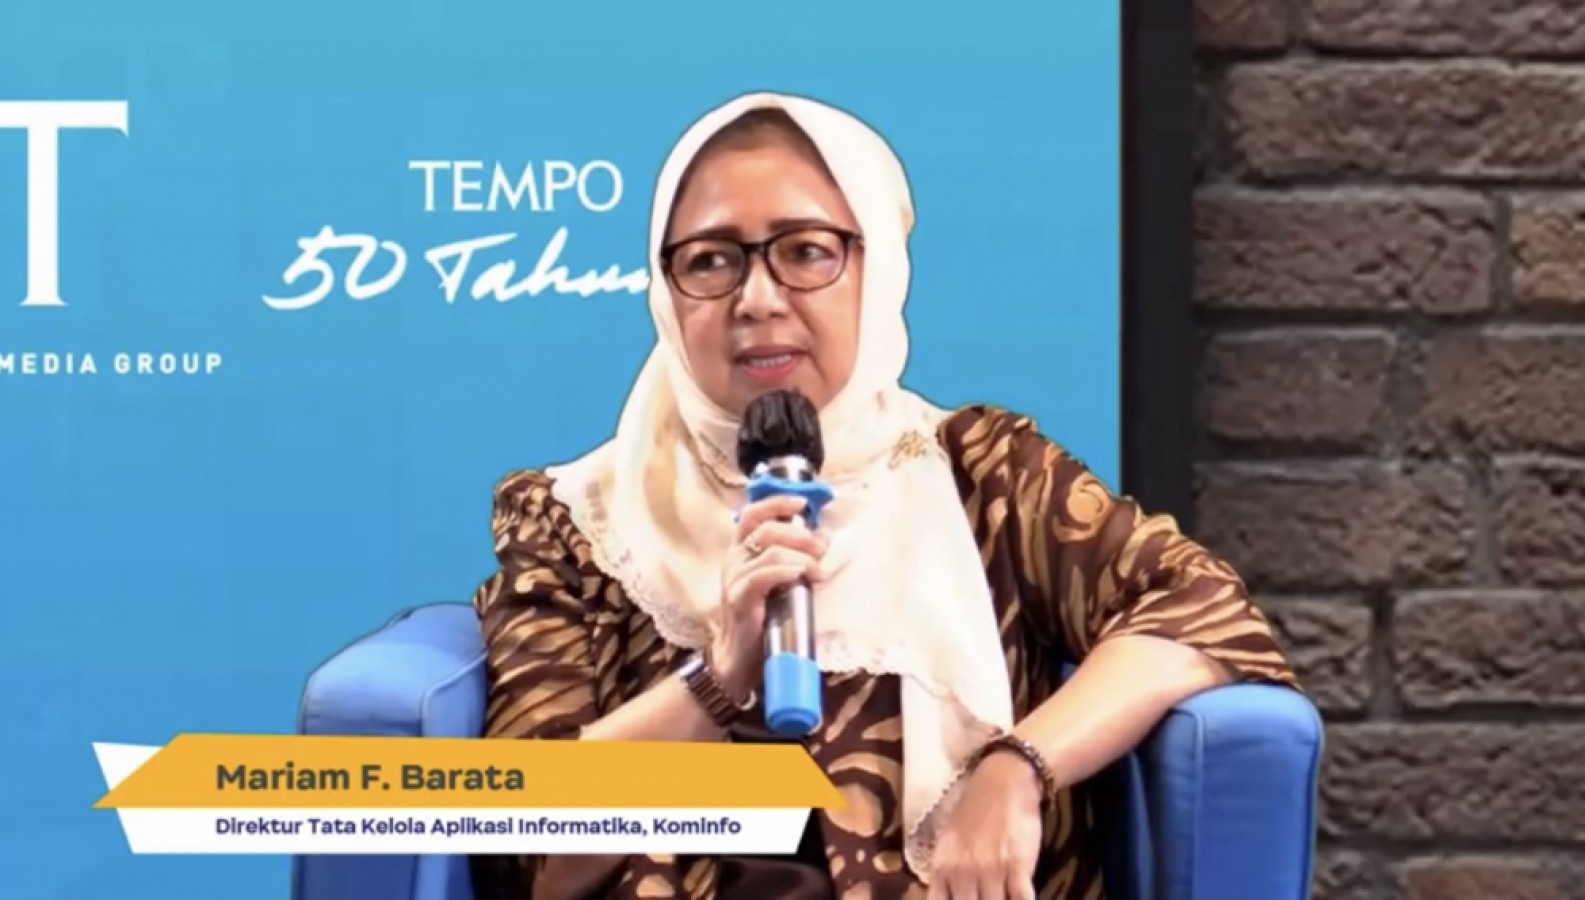 RUU PDP Perlu Segera Hadir Dalam Sistem Hukum Indonesia